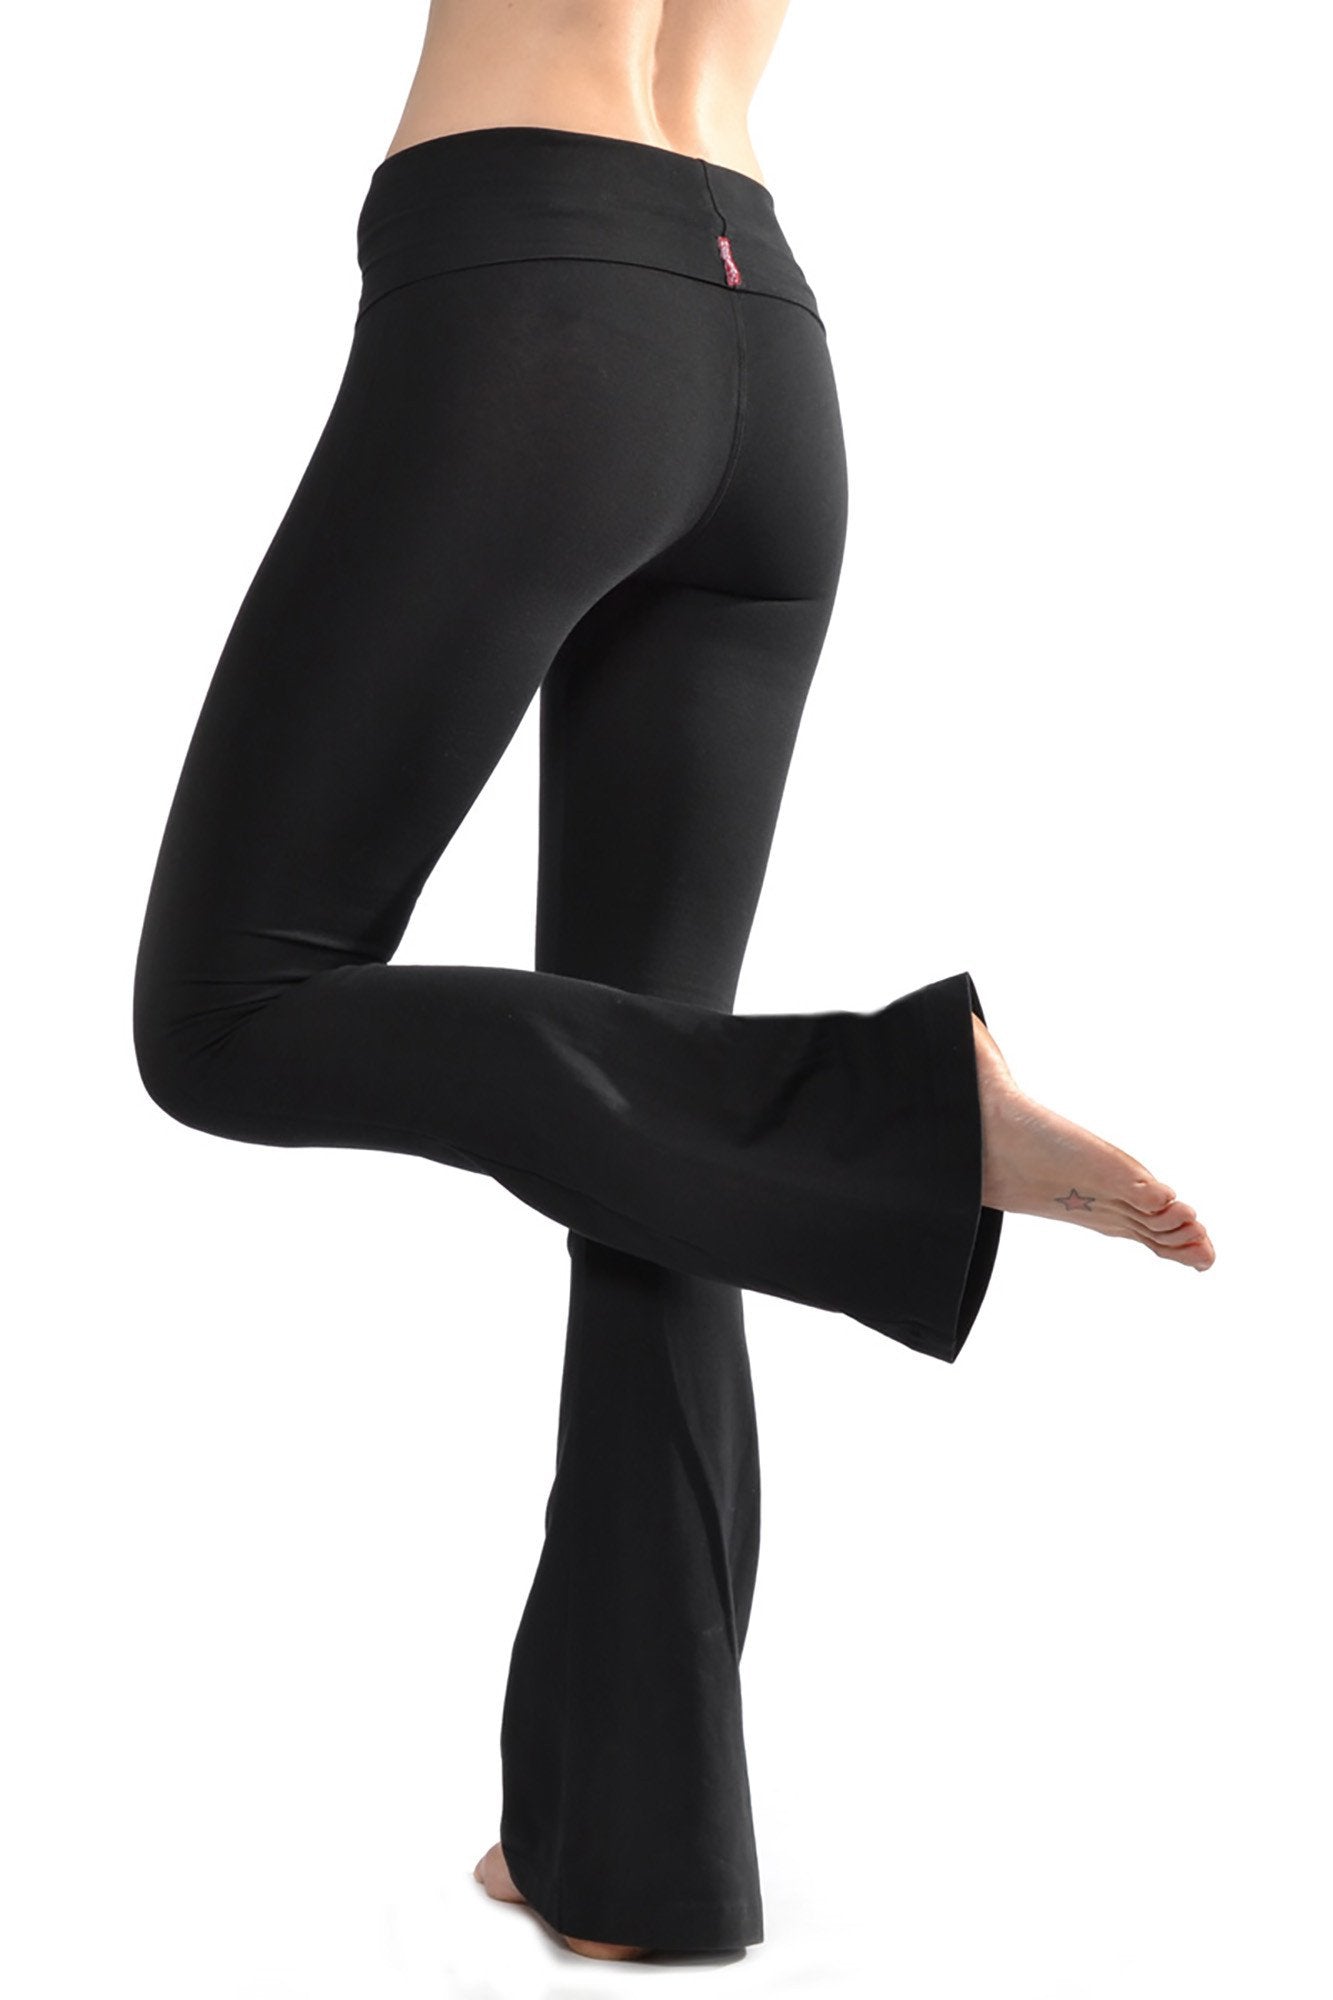 Bell Bottom Flare Pants For Women Yoga Leggings